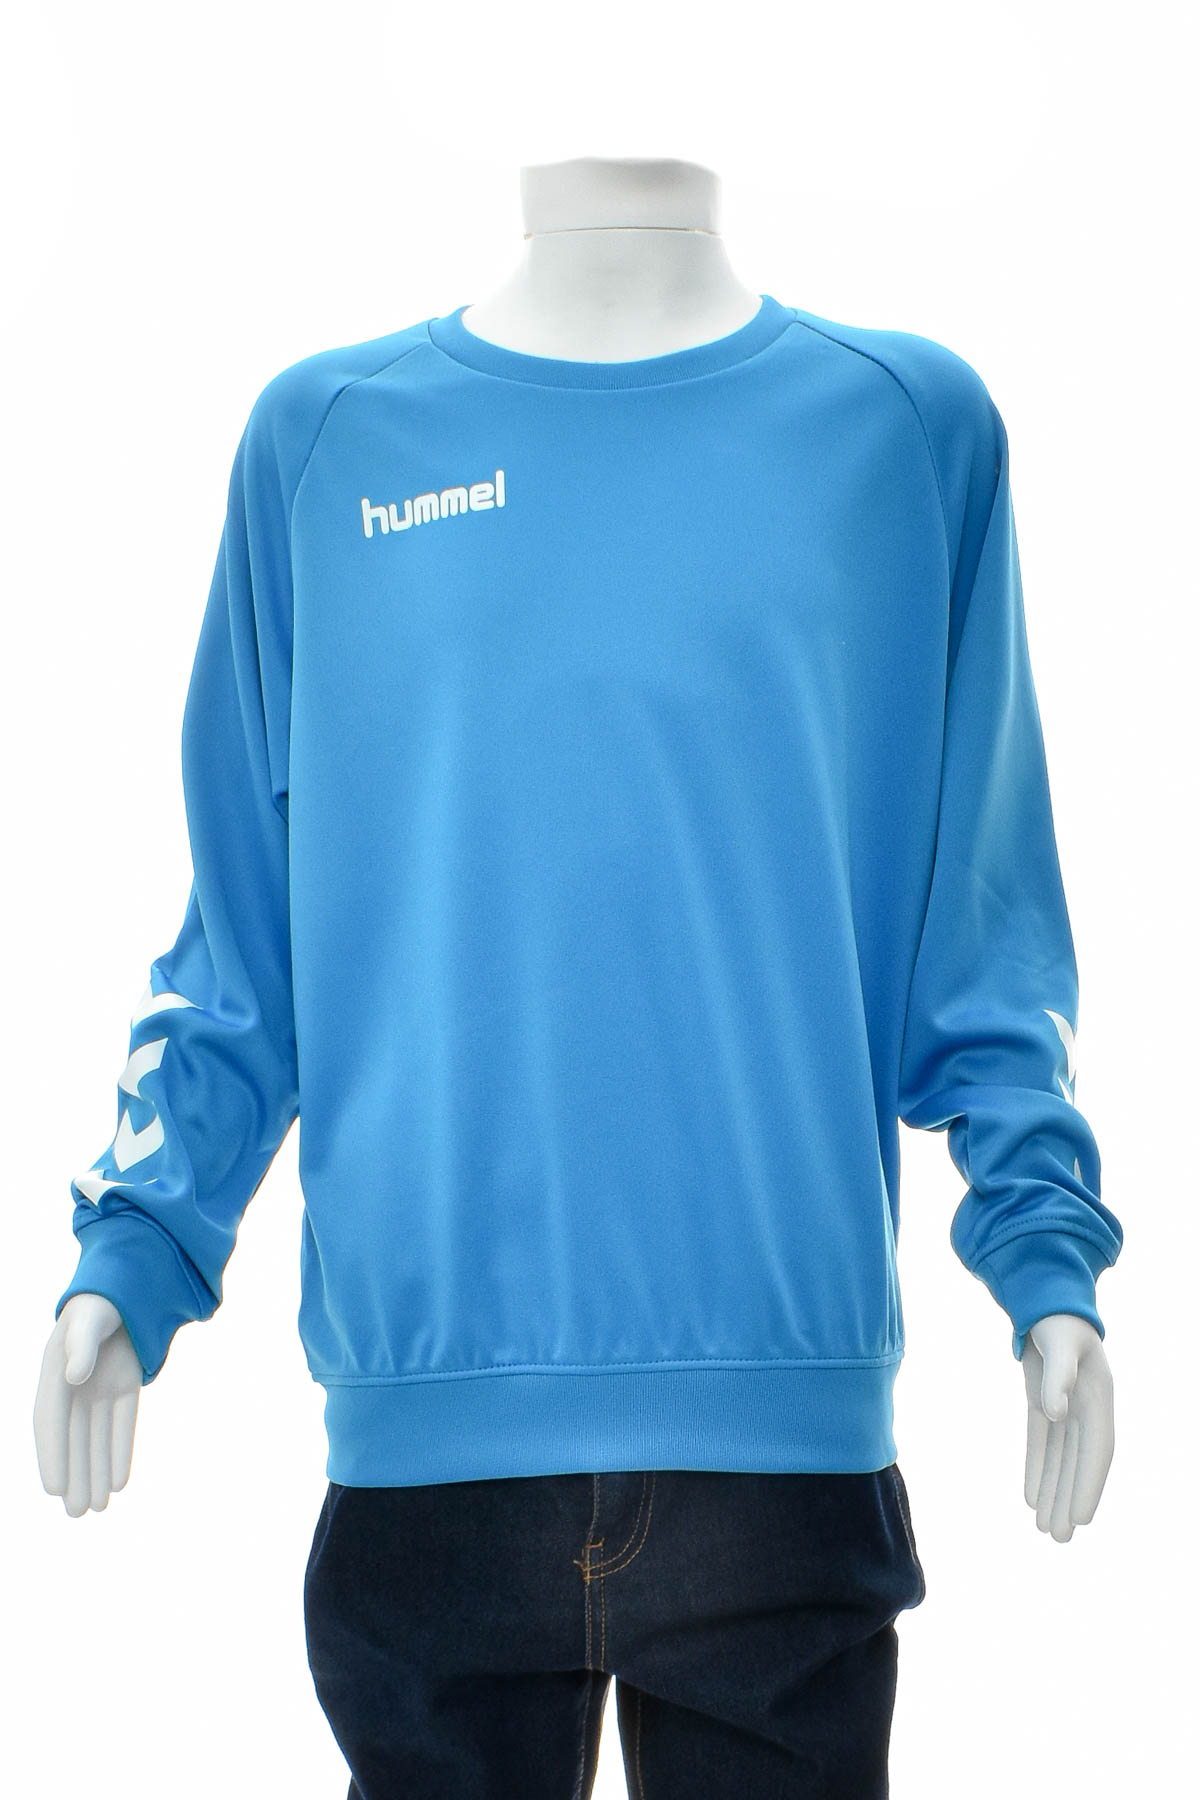 Boys' blouse - Hummel - 0